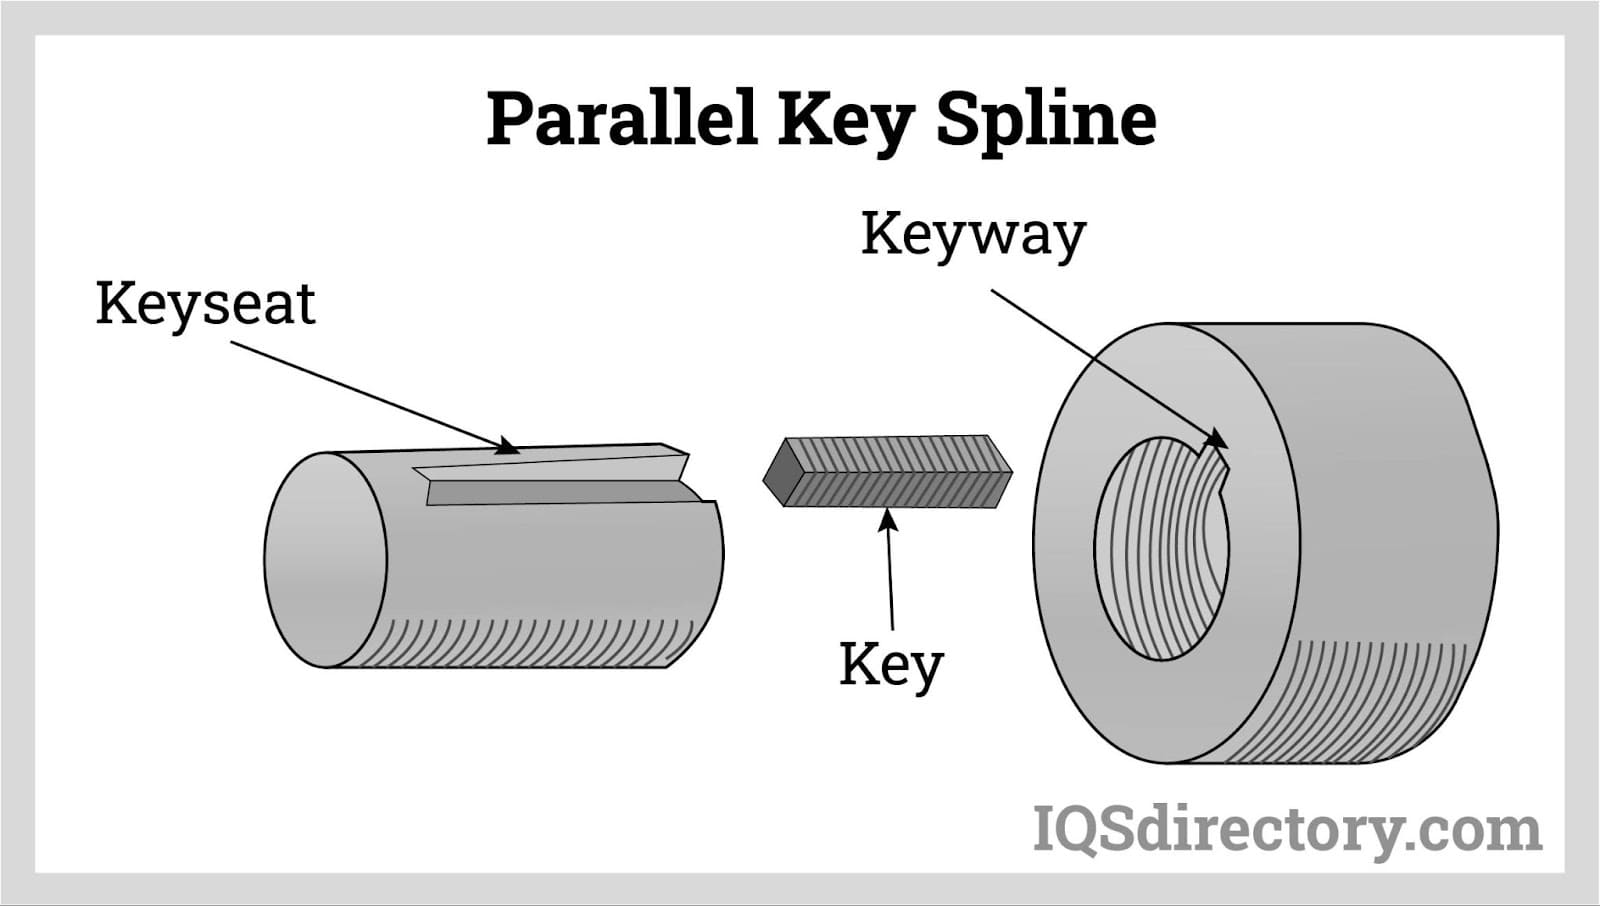 Parallel Key Spline